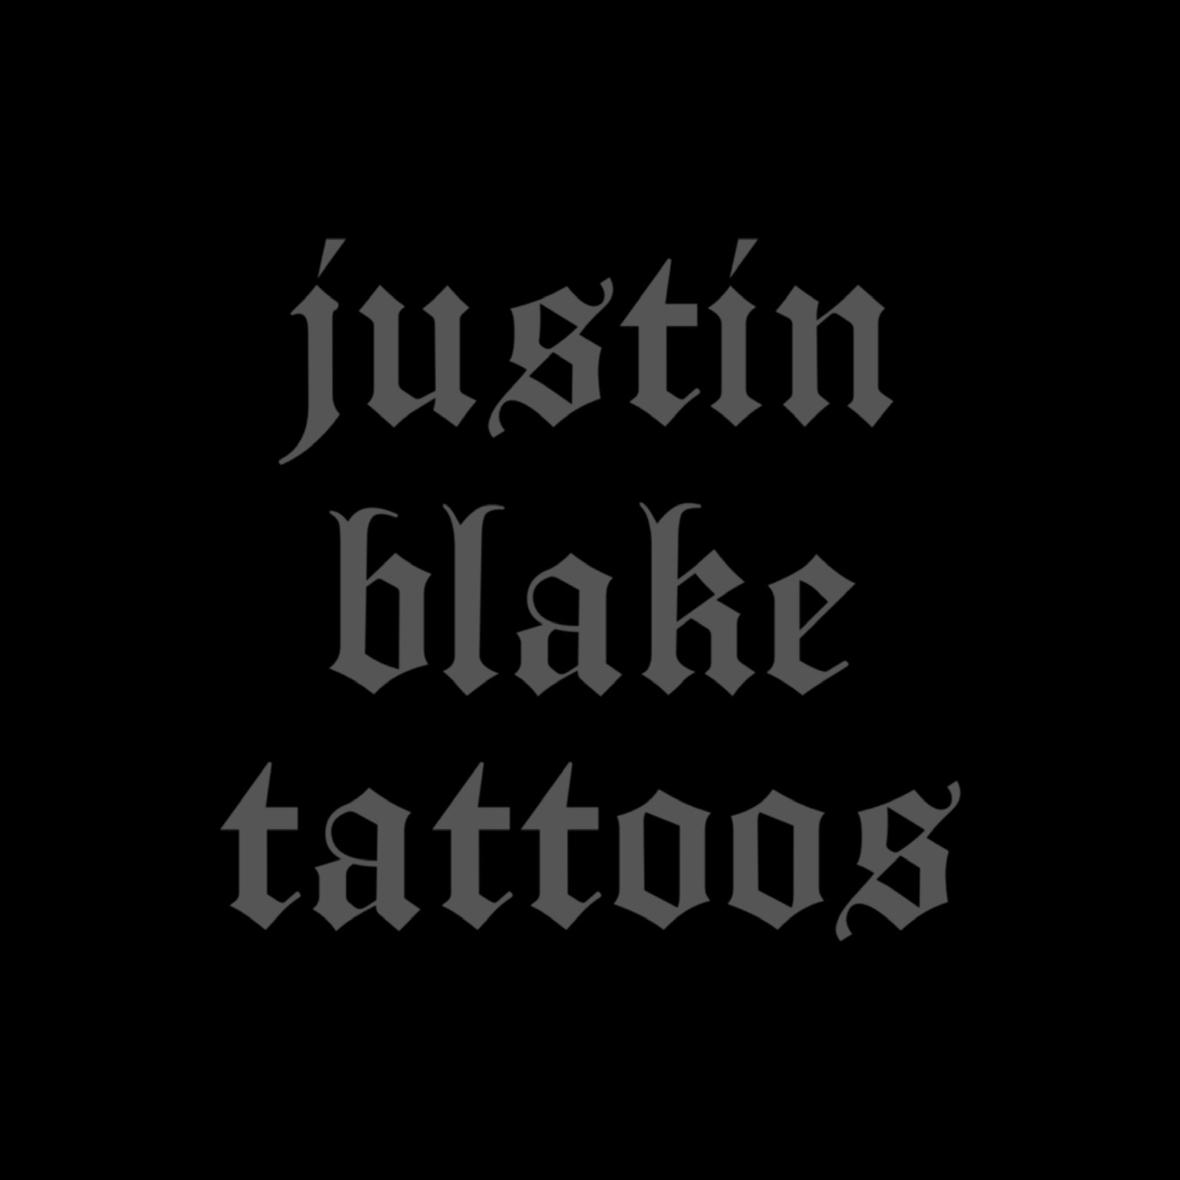 Justin Blake's images